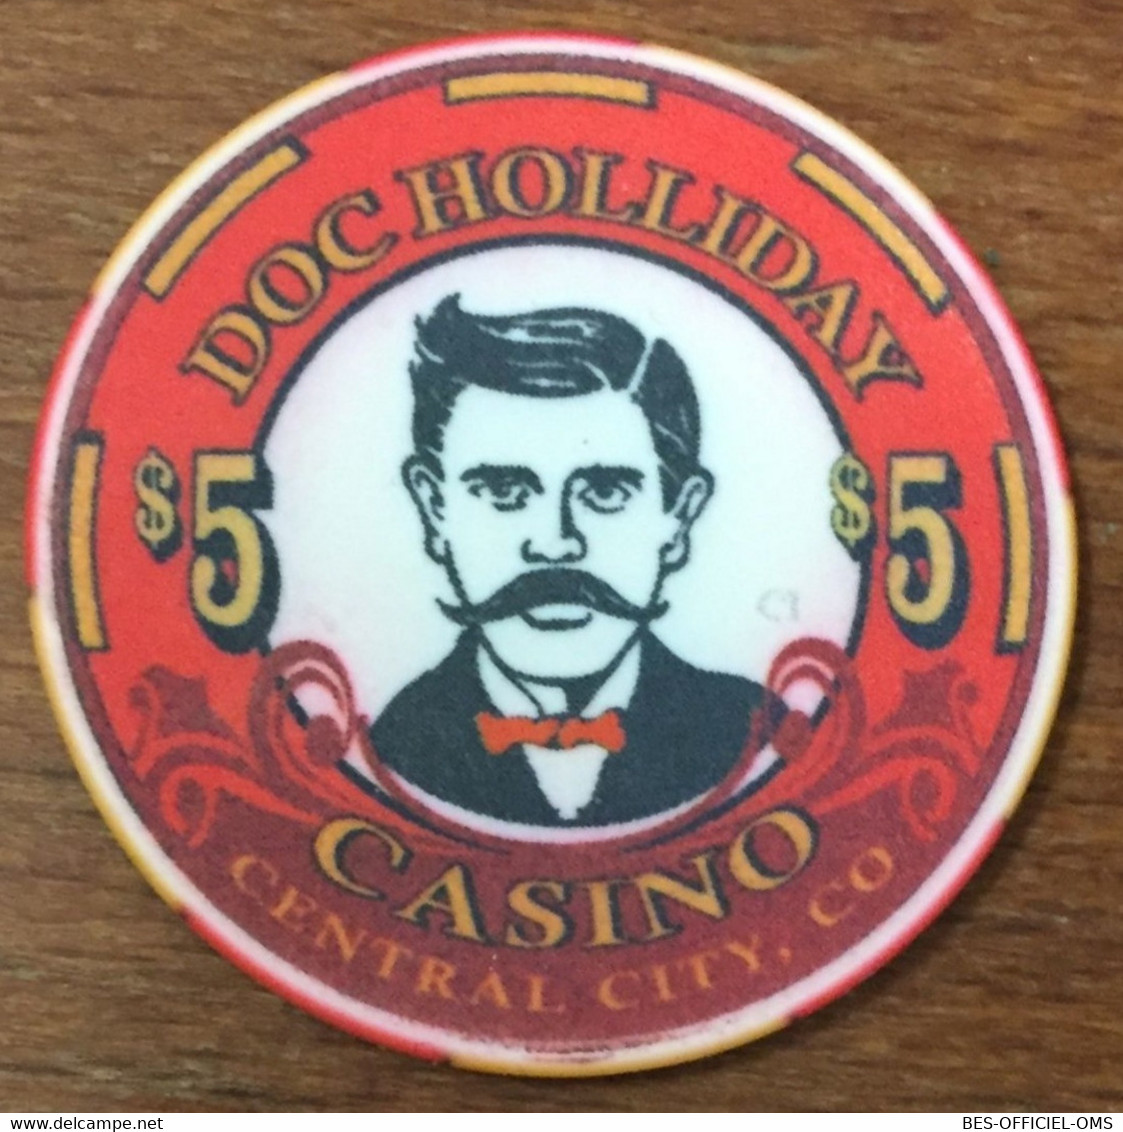 ÉTATS-UNIS USA COLORADO CENTRAL CITY DOC HOLLIDAY CASINO CHIP $ 5 JETON TOKENS COINS - Casino